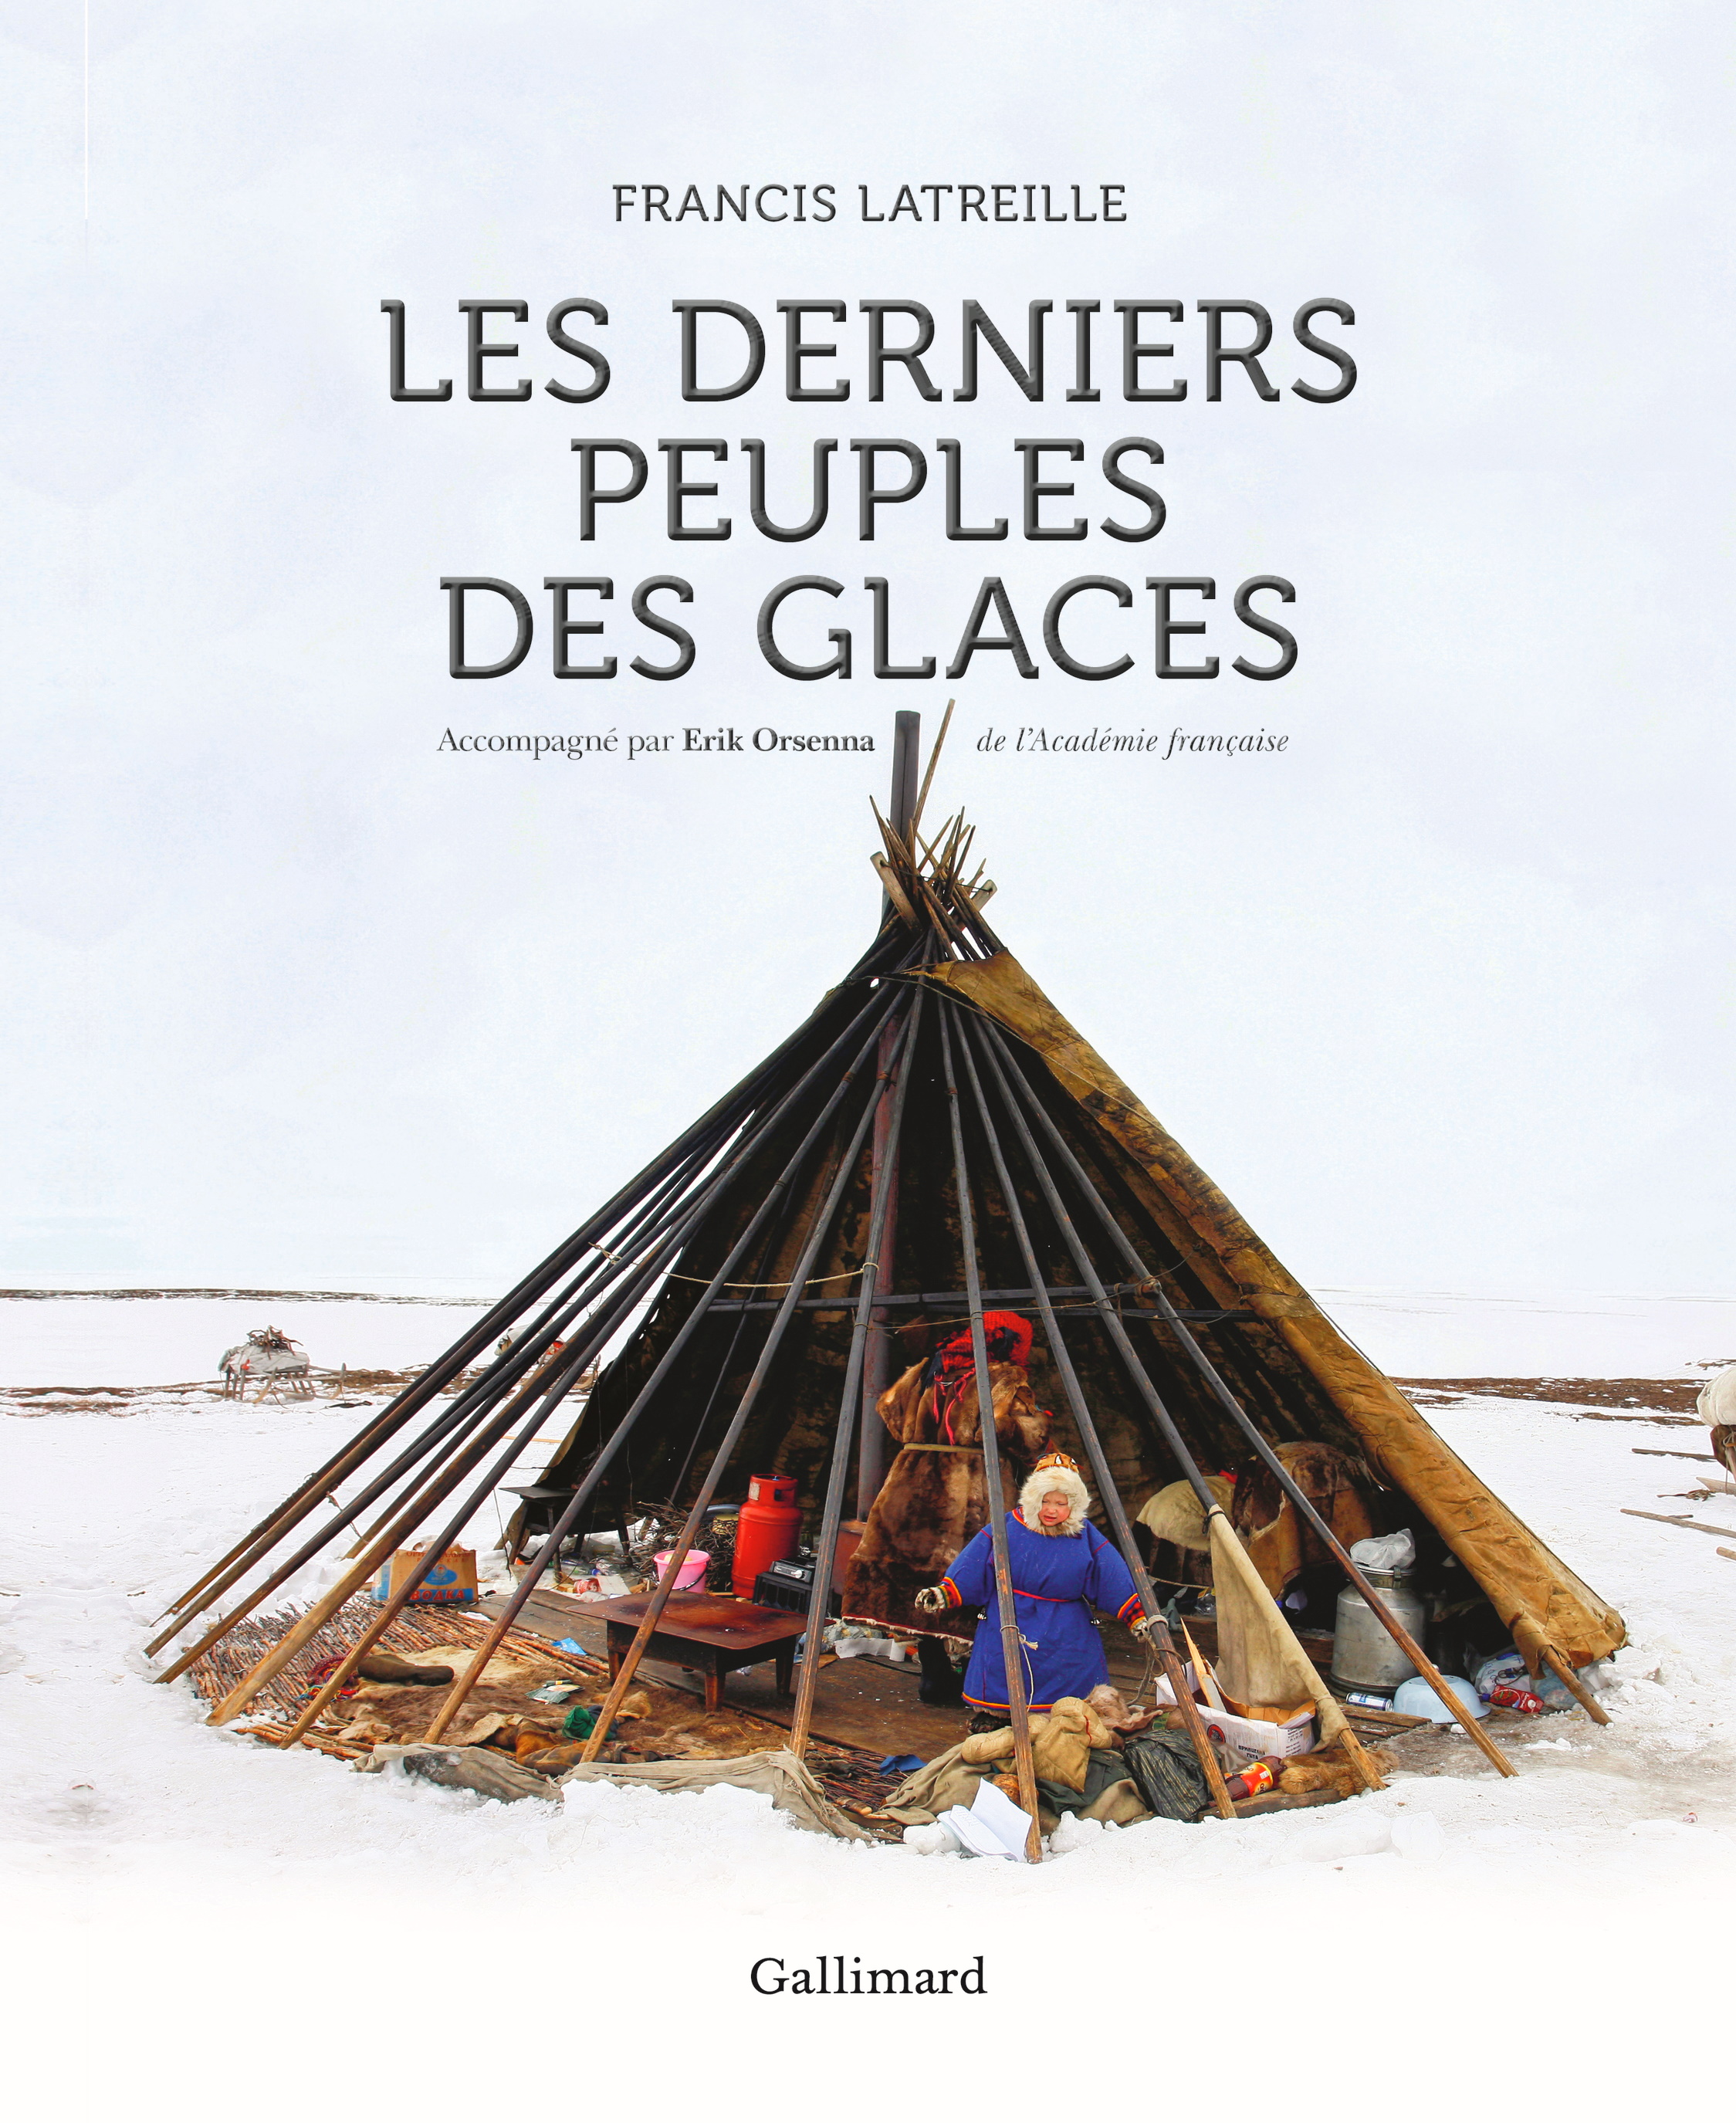 Book cover of "Les derniers peuples des glaces"